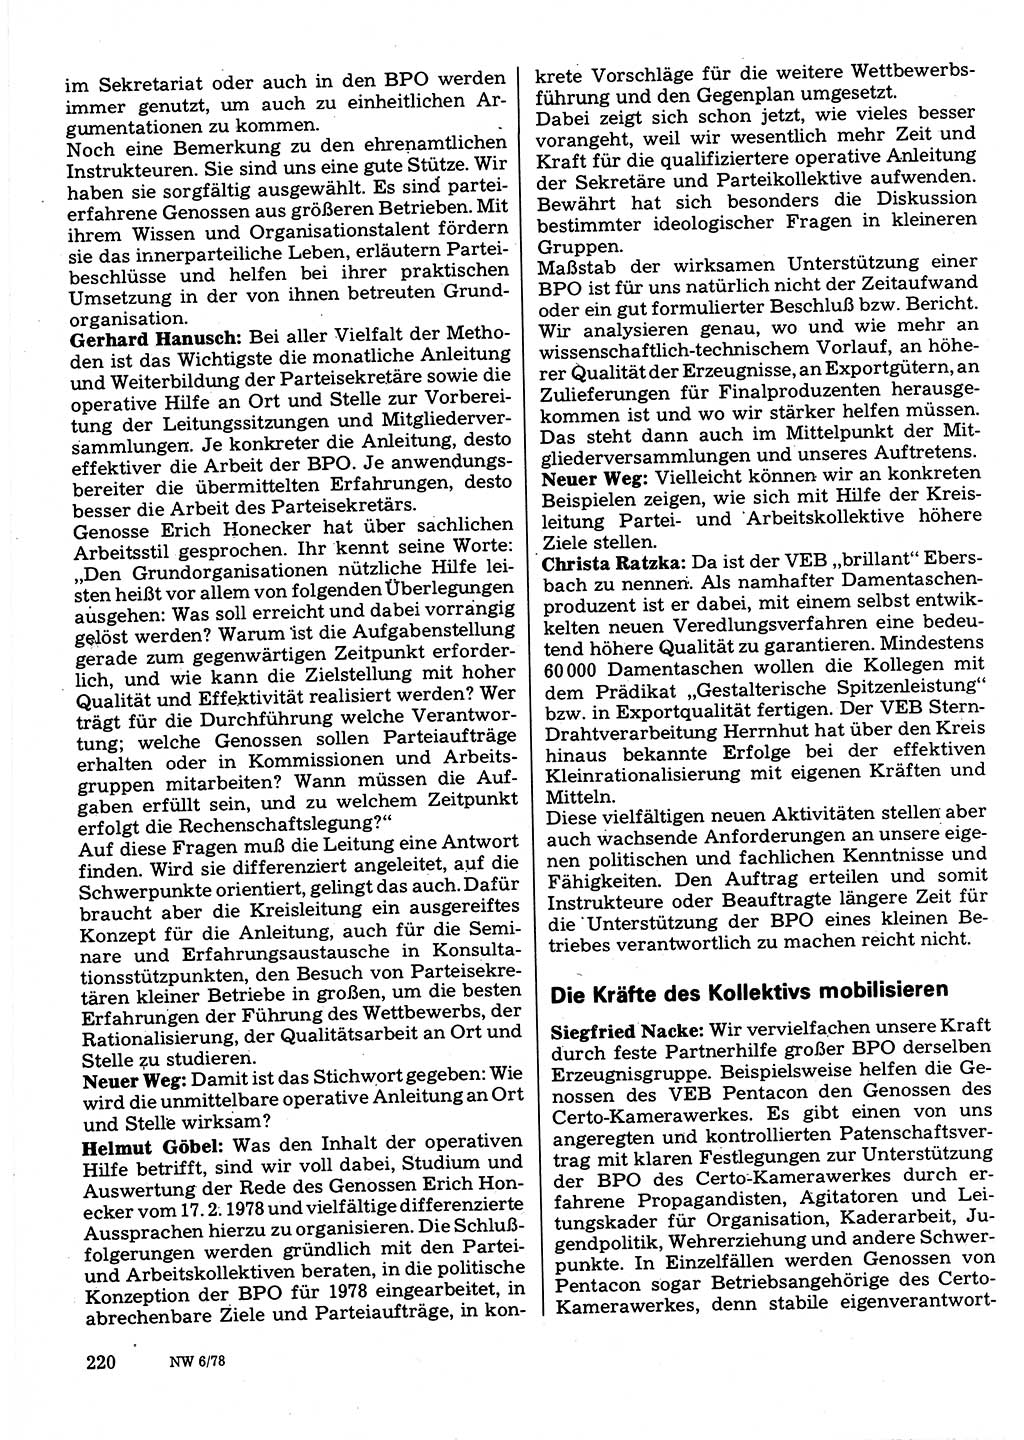 Neuer Weg (NW), Organ des Zentralkomitees (ZK) der SED (Sozialistische Einheitspartei Deutschlands) für Fragen des Parteilebens, 33. Jahrgang [Deutsche Demokratische Republik (DDR)] 1978, Seite 220 (NW ZK SED DDR 1978, S. 220)